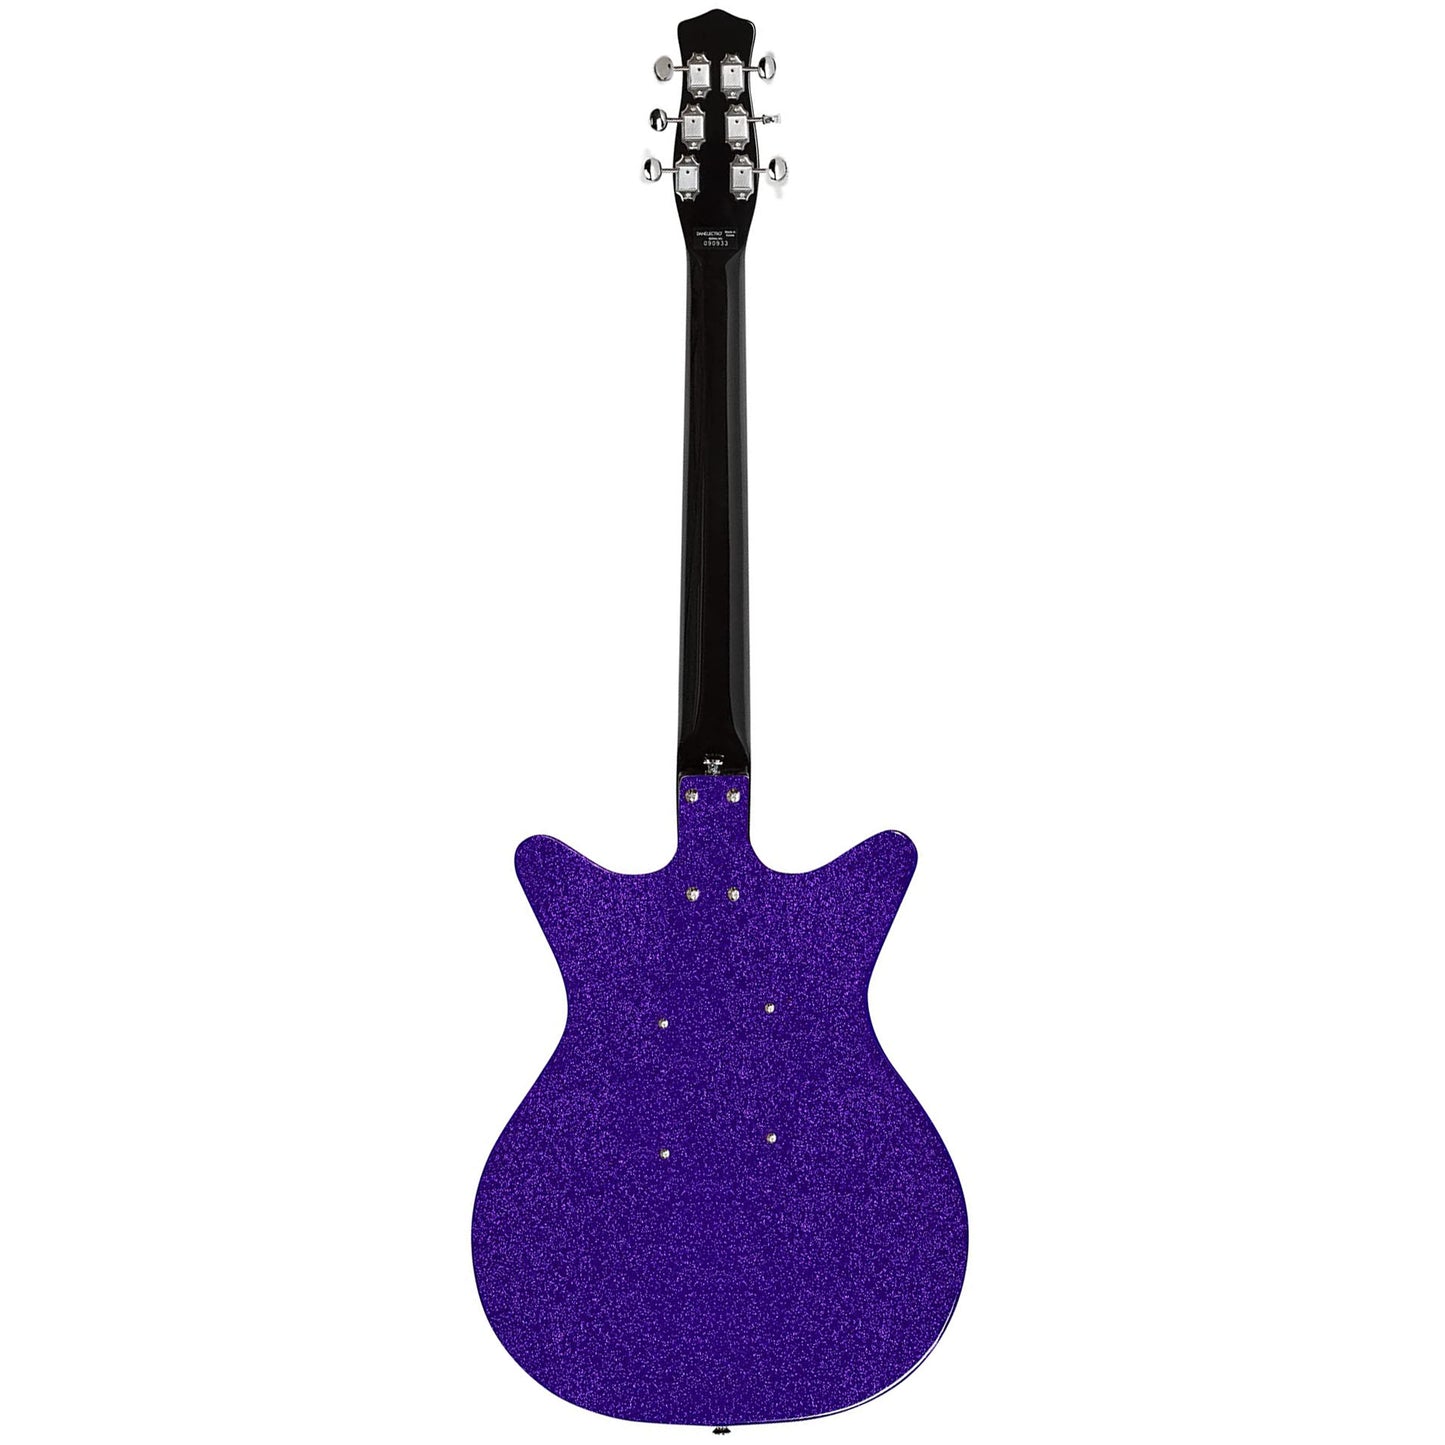 Danelectro Blackout 59 Electric Guitar - Purple Metal Flake